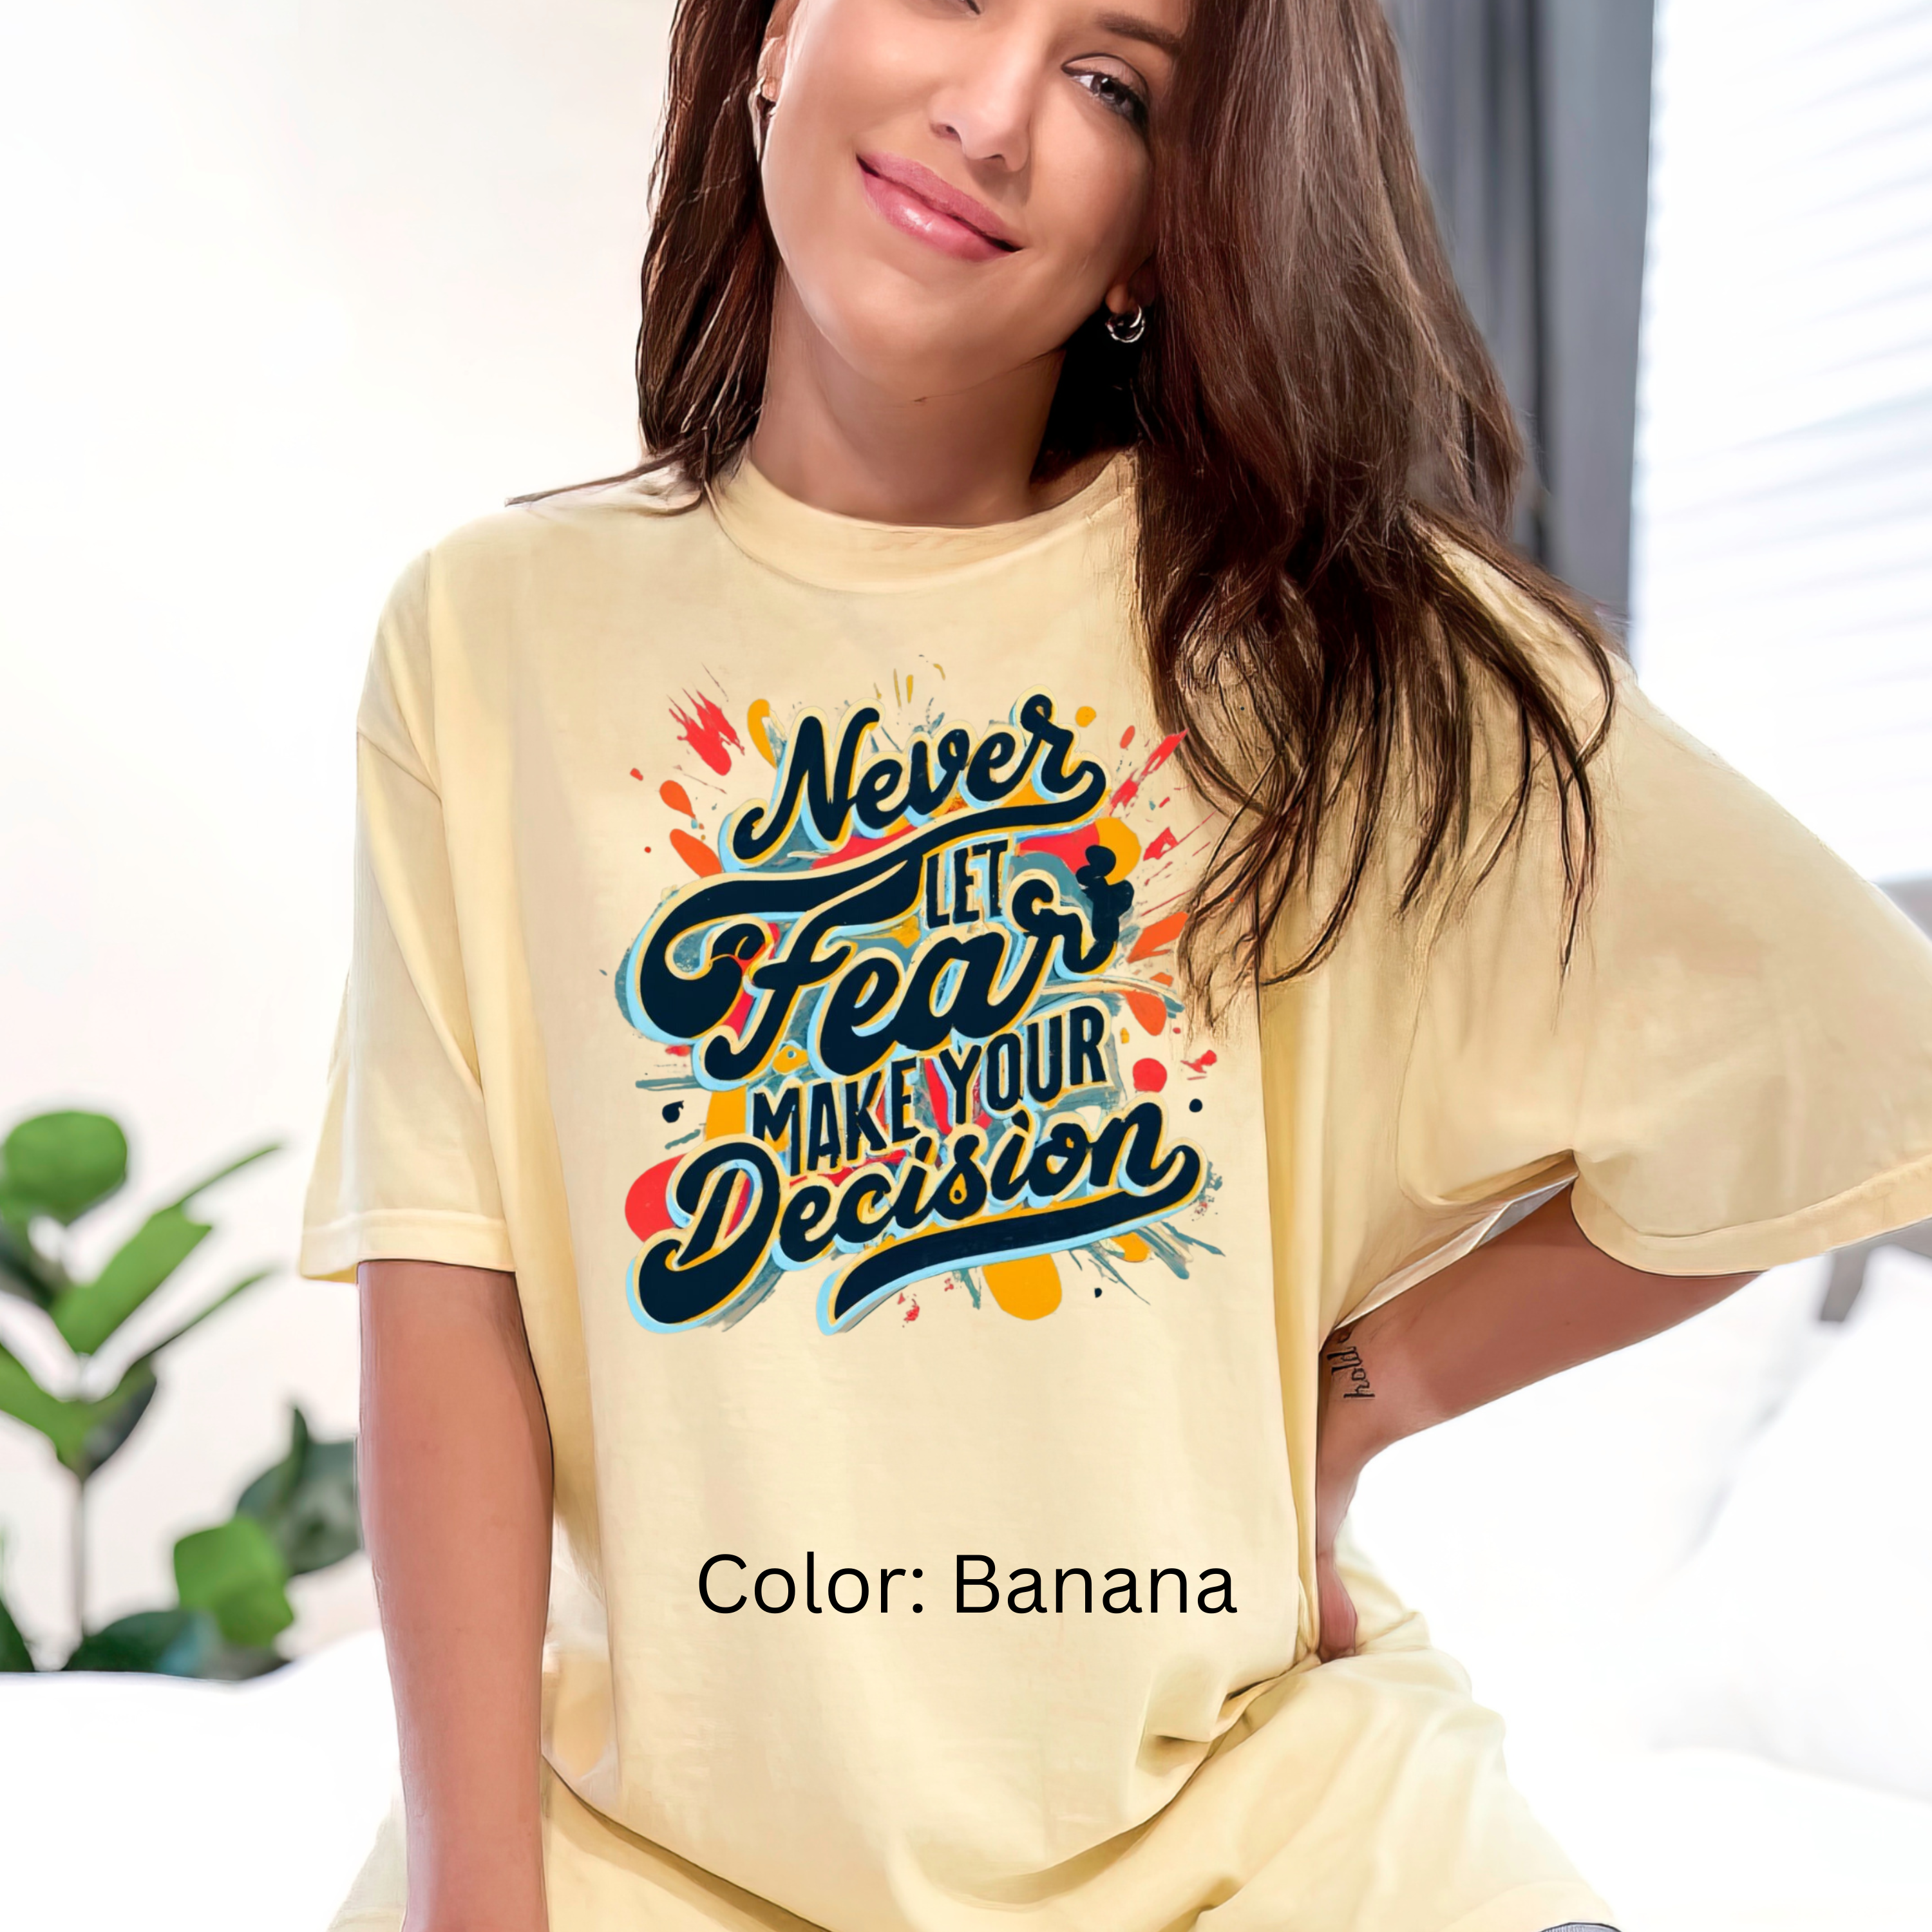 Retro 'Never Let Fear Make Your Decision' Comfort Colors T-Shirt